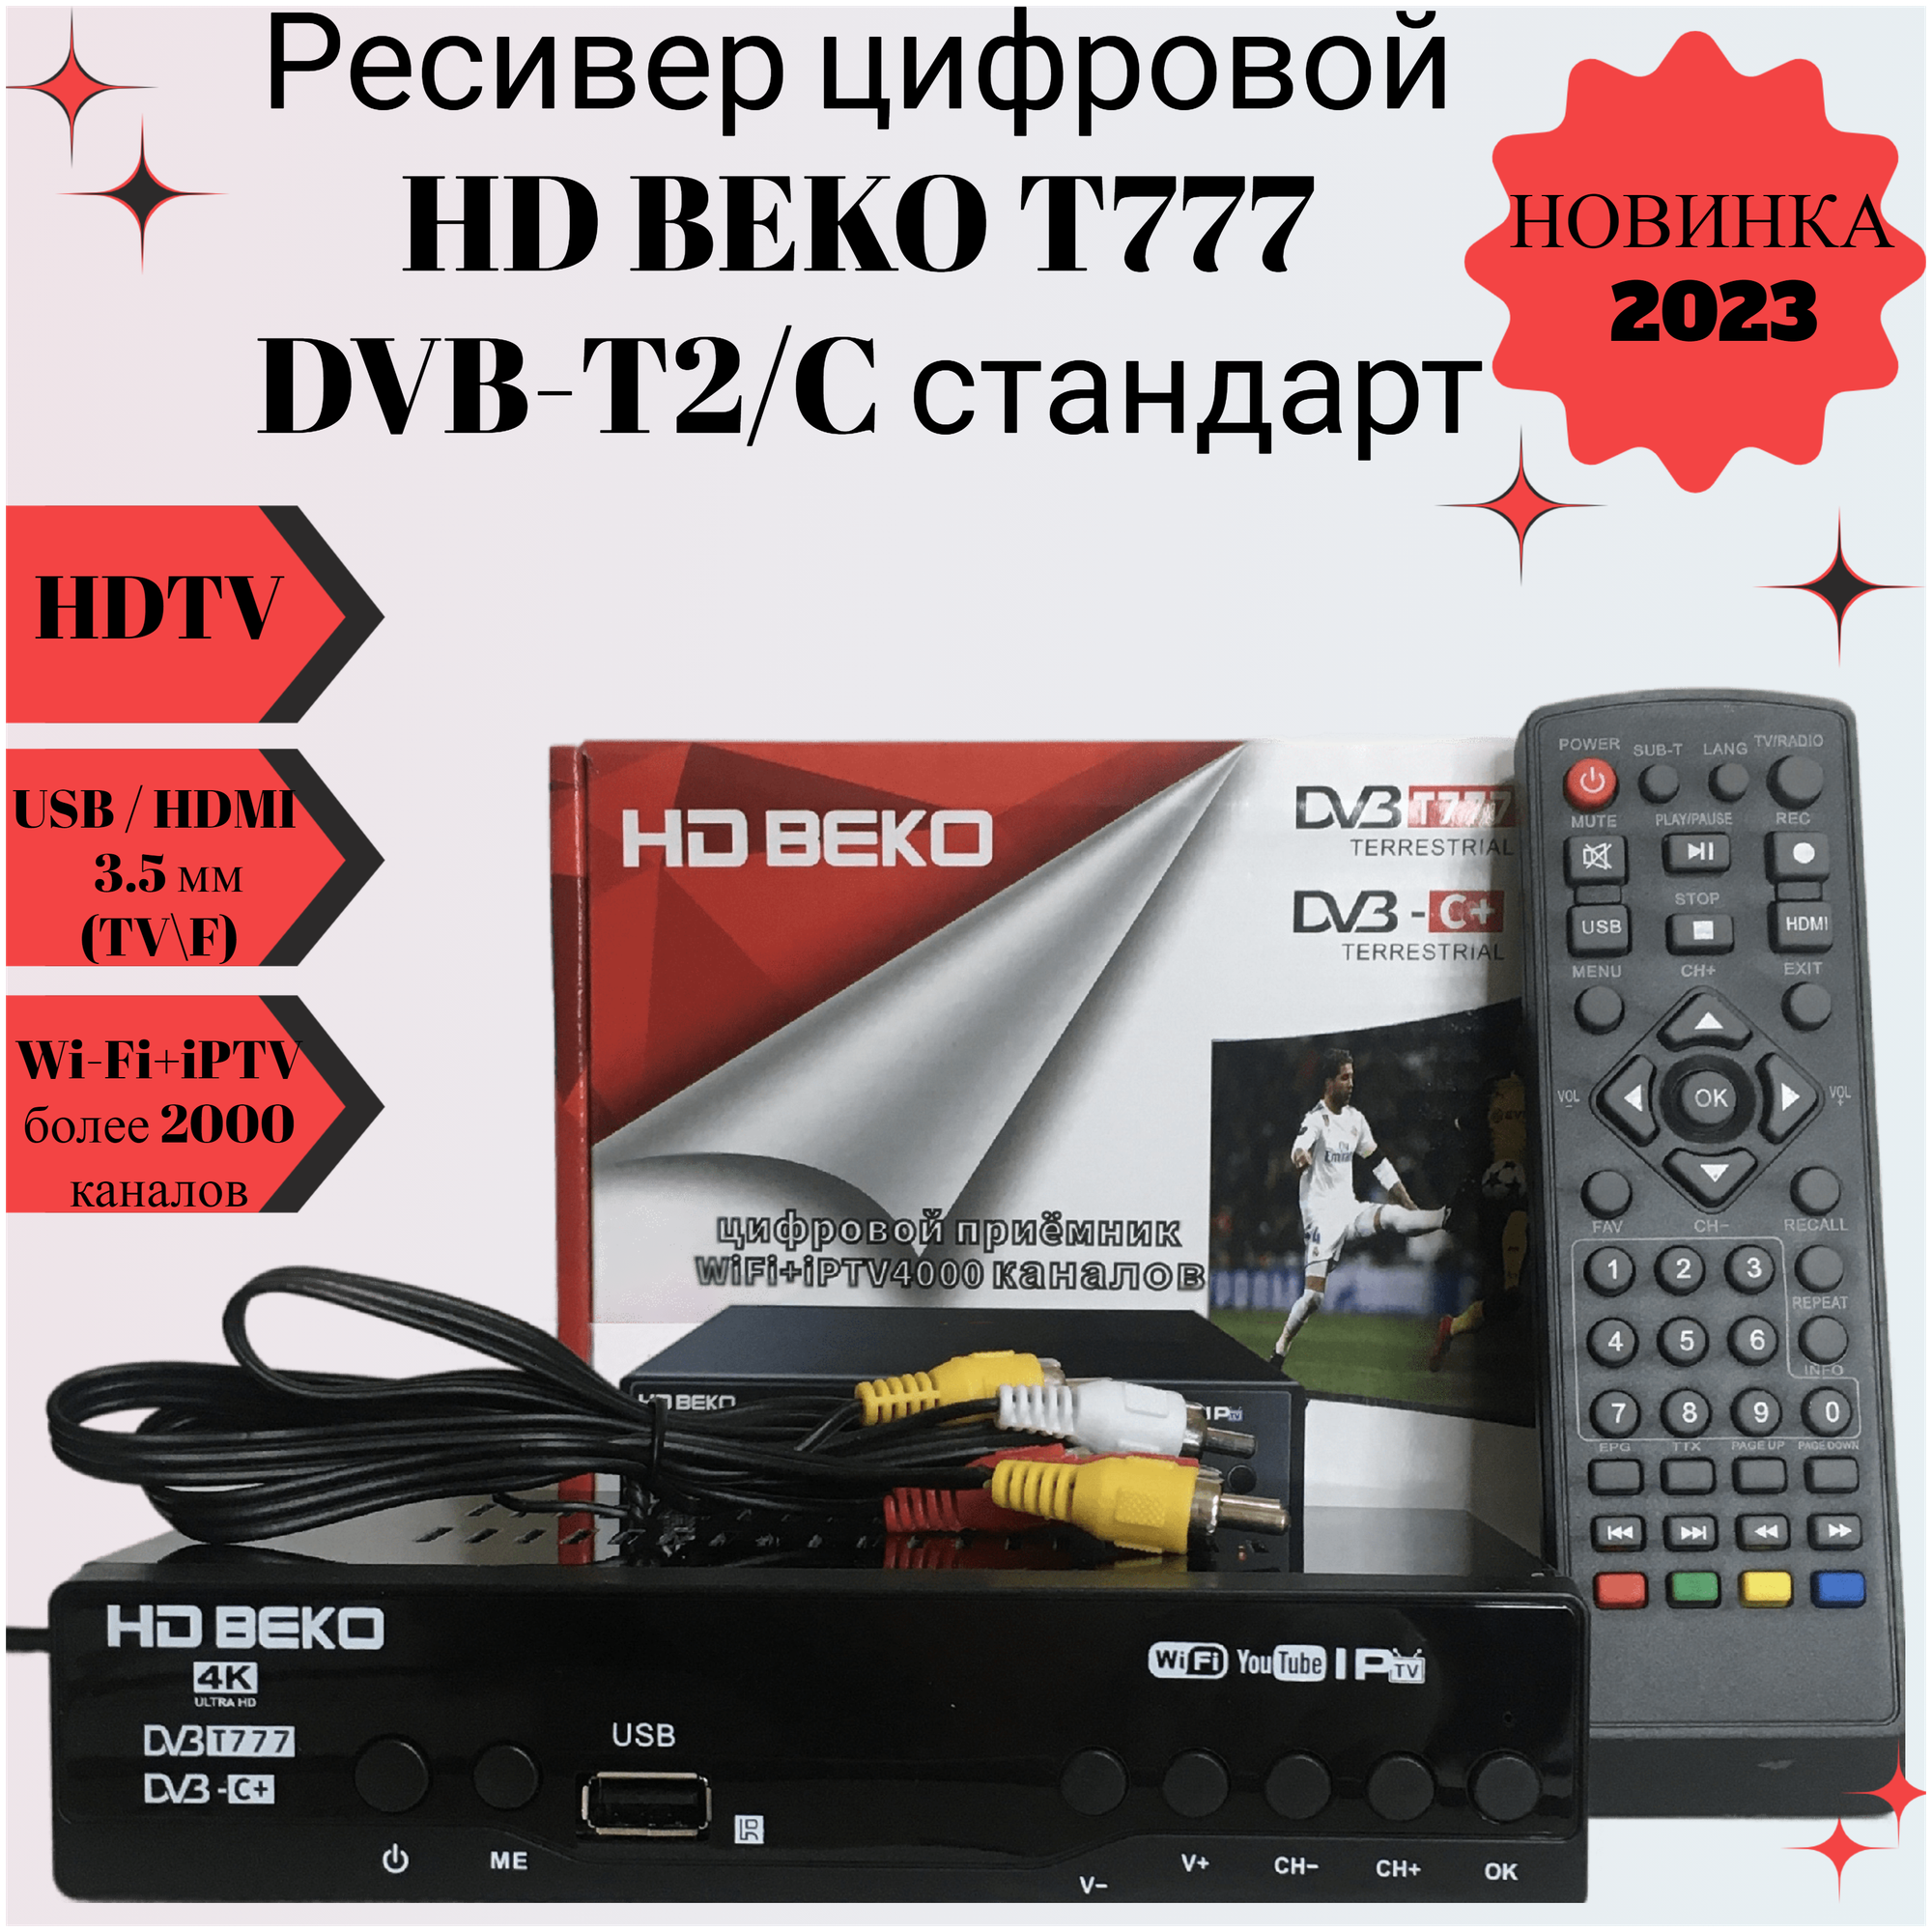 Ресивер цифровой HD BEKO T777/B555 эфирный DVB-T2/C стандарт, тв приставка, бесплатное тв,TV-тюнер, цифровой приёмник